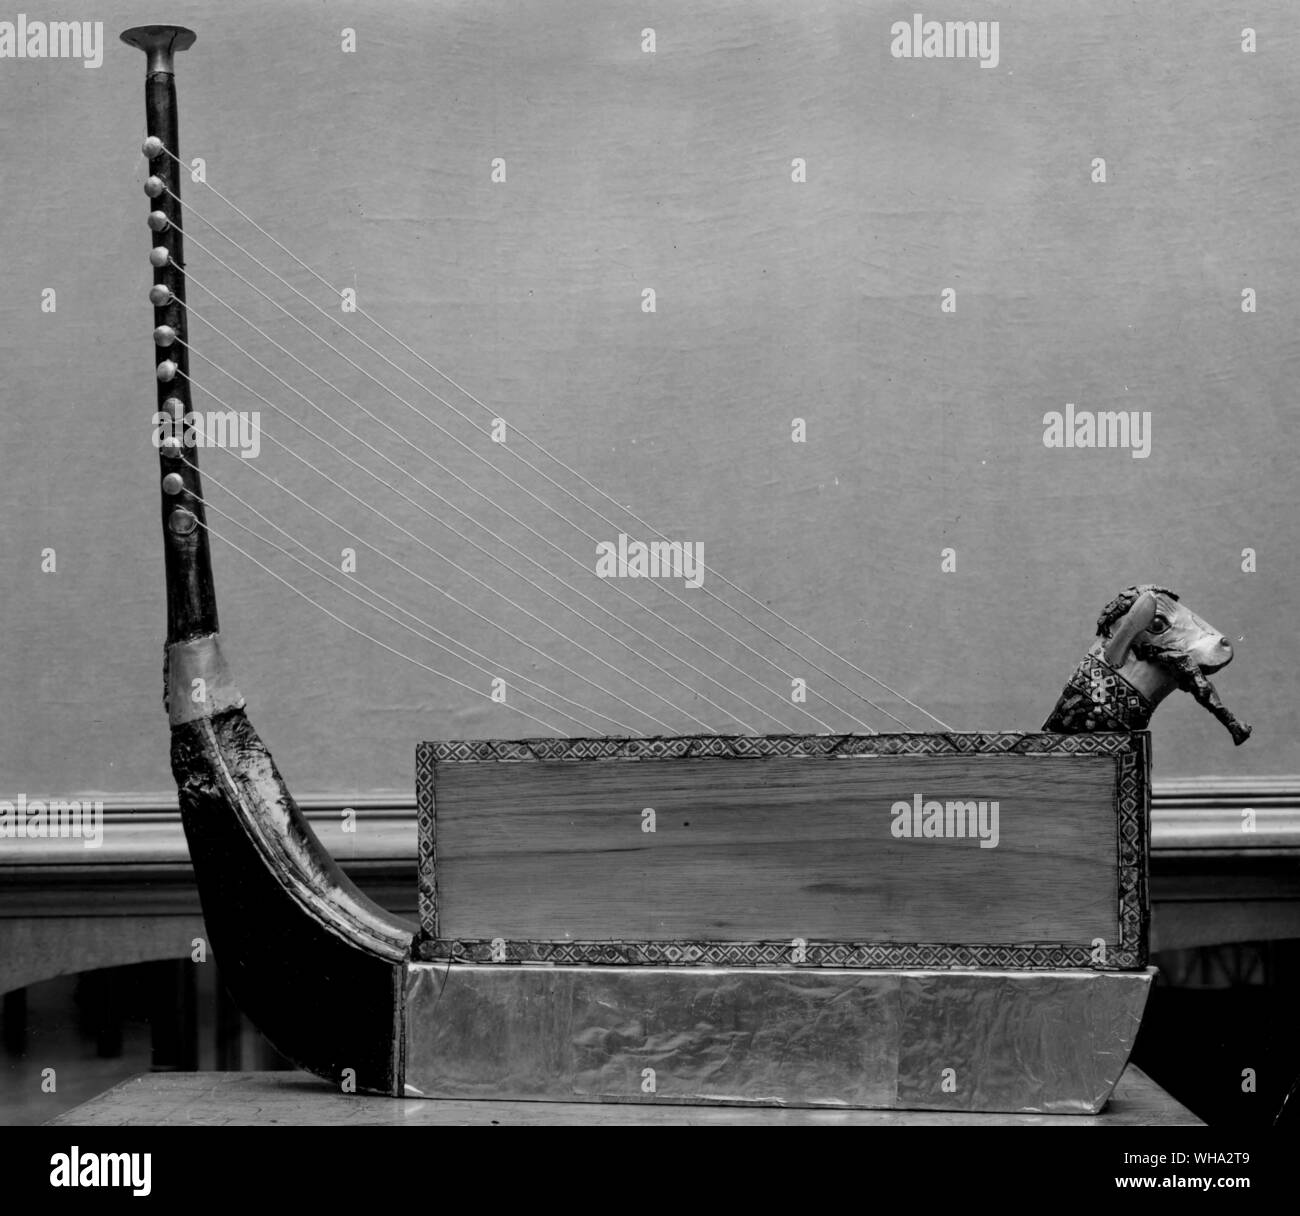 Das alte Ägypten: Stringed instrument in Form einer Boot-ähnlichen Design. Stockfoto